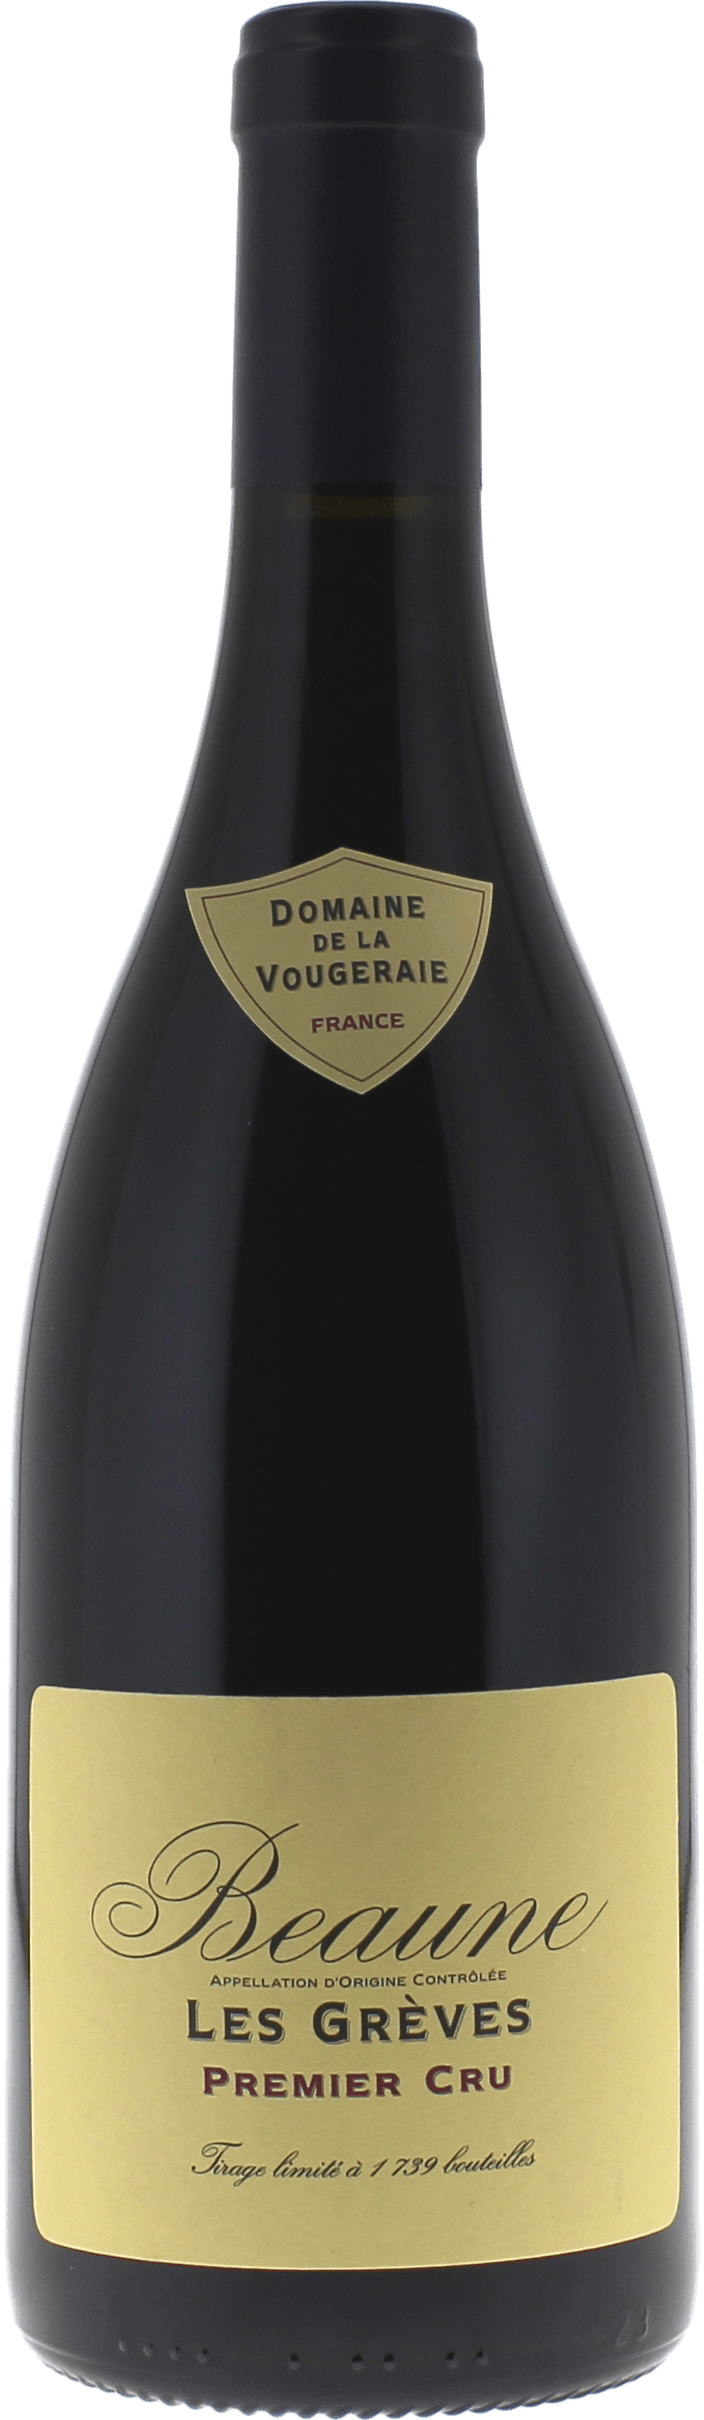 Beaune greves 1er cru 2015 Domaine VOUGERAIE, Bourgogne rouge